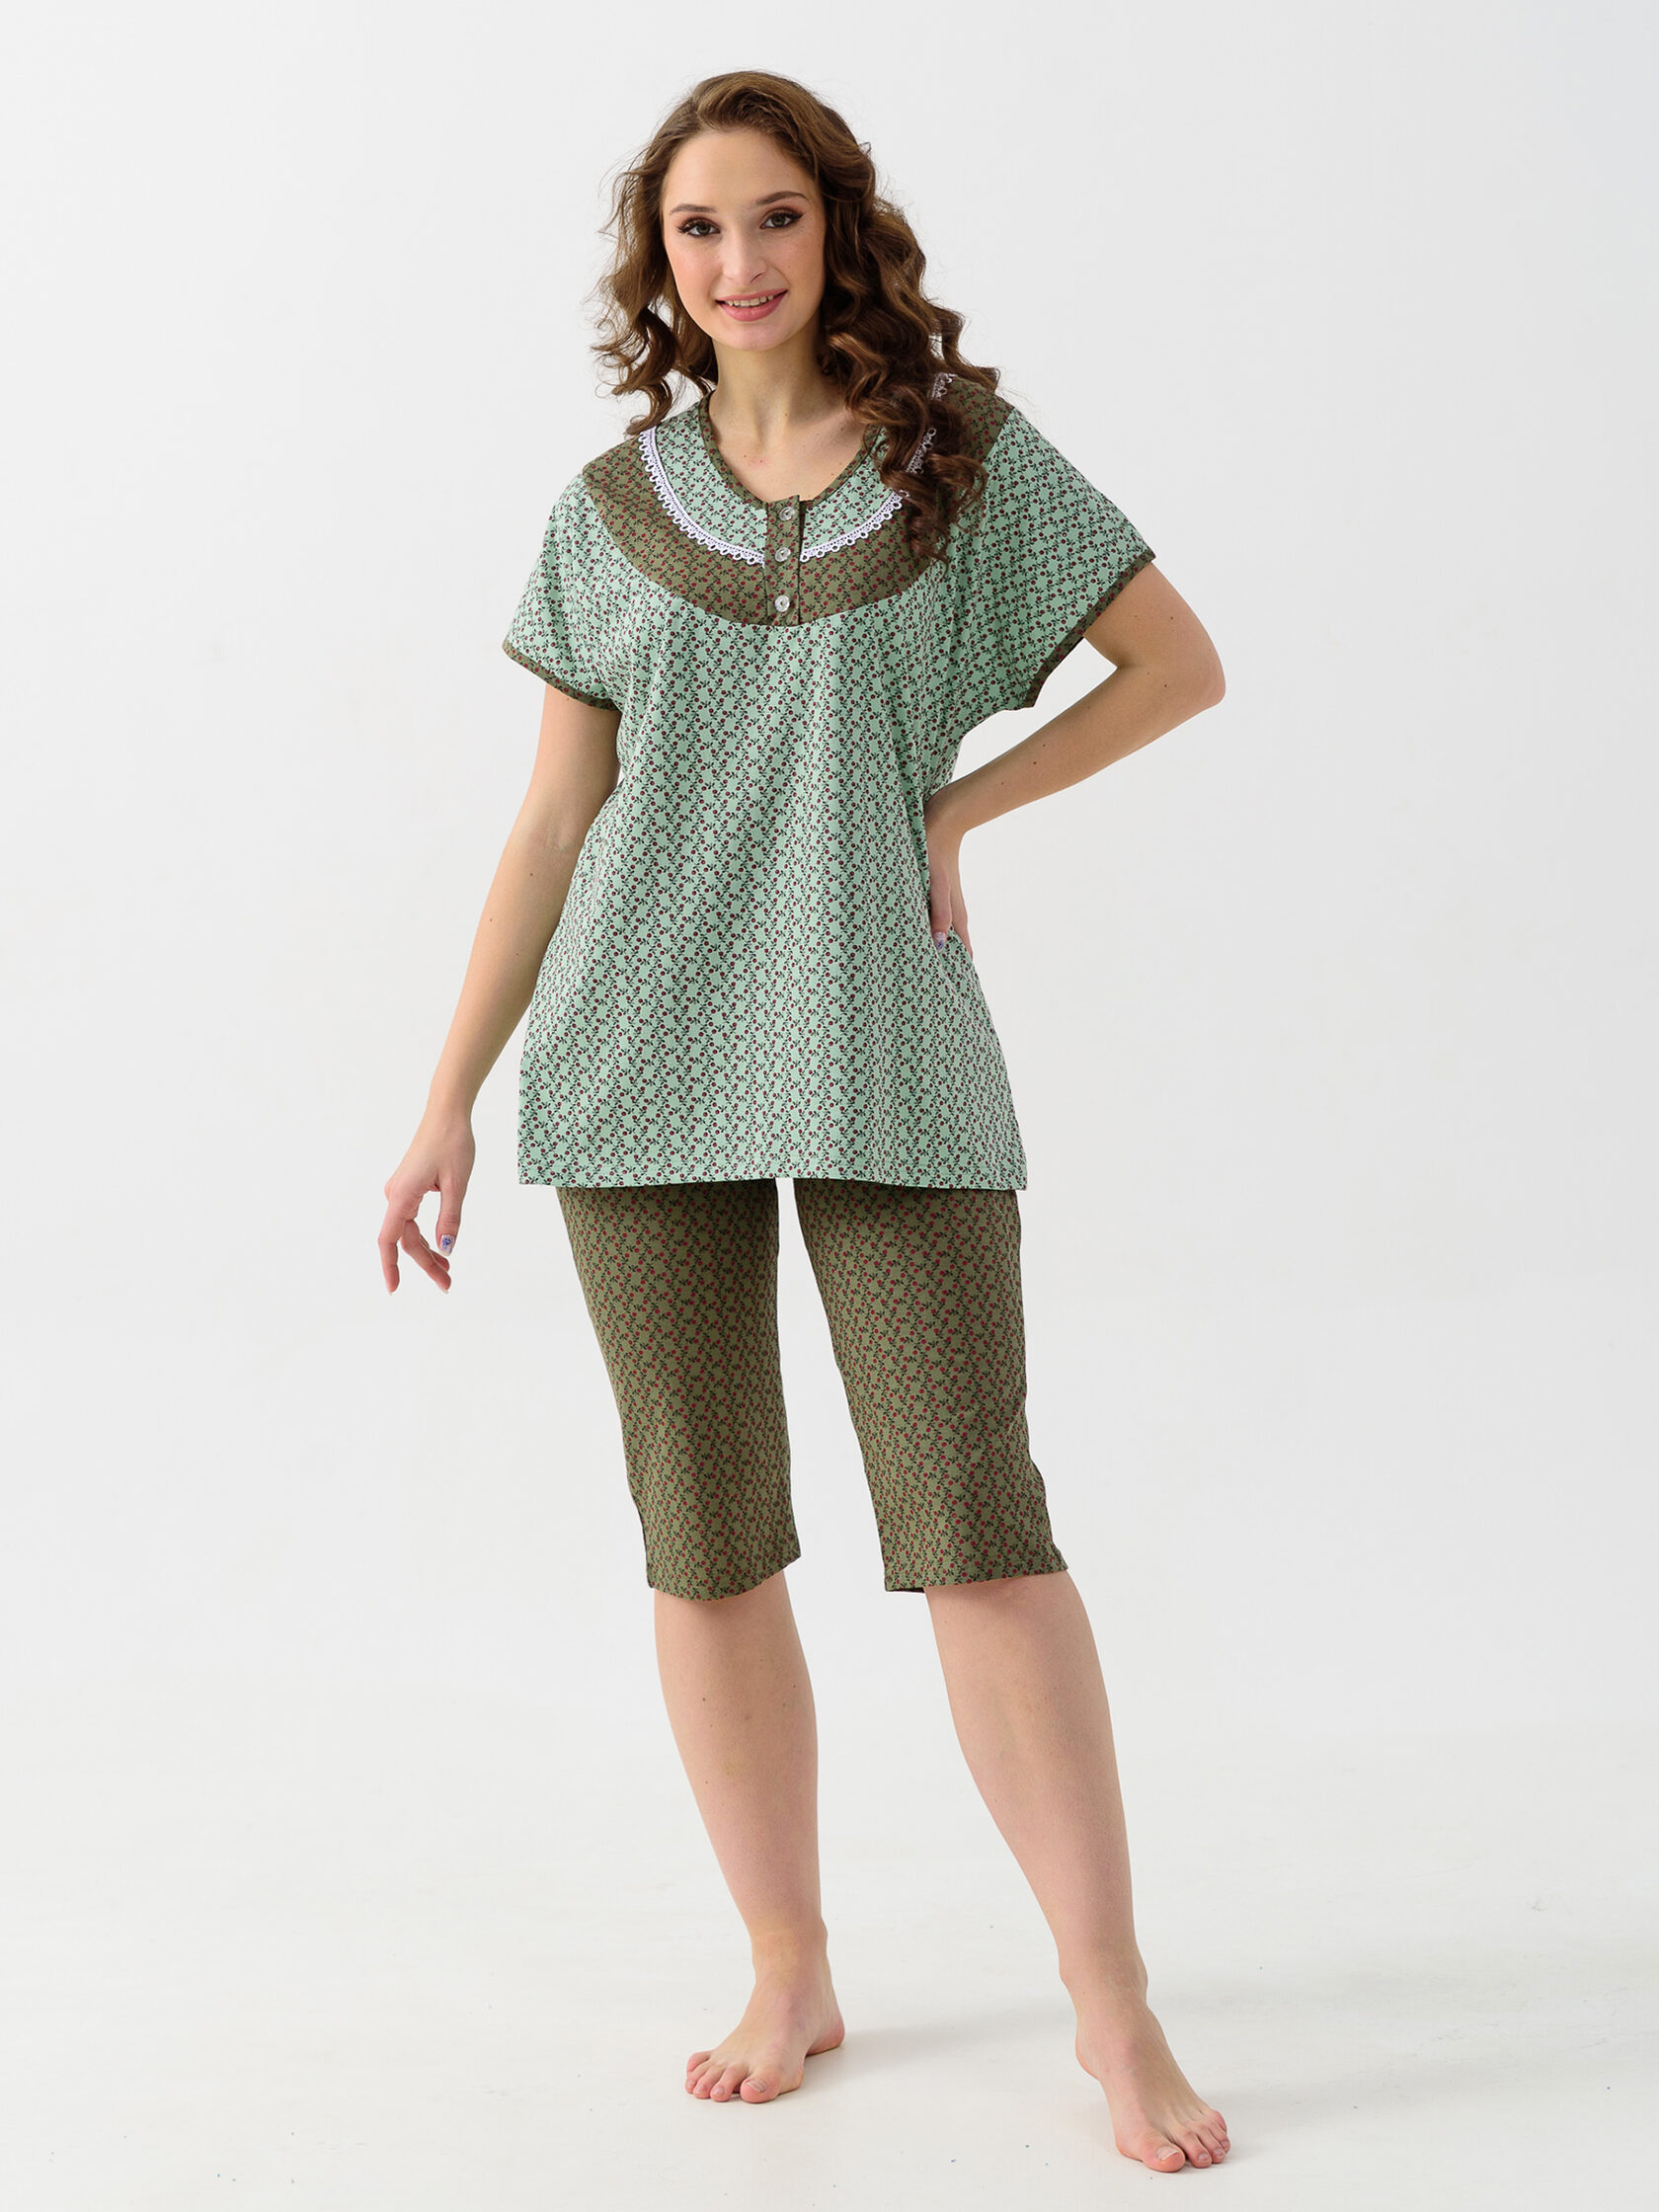 Жен. пижама с шортами "Цветочек" Зеленый р. 48